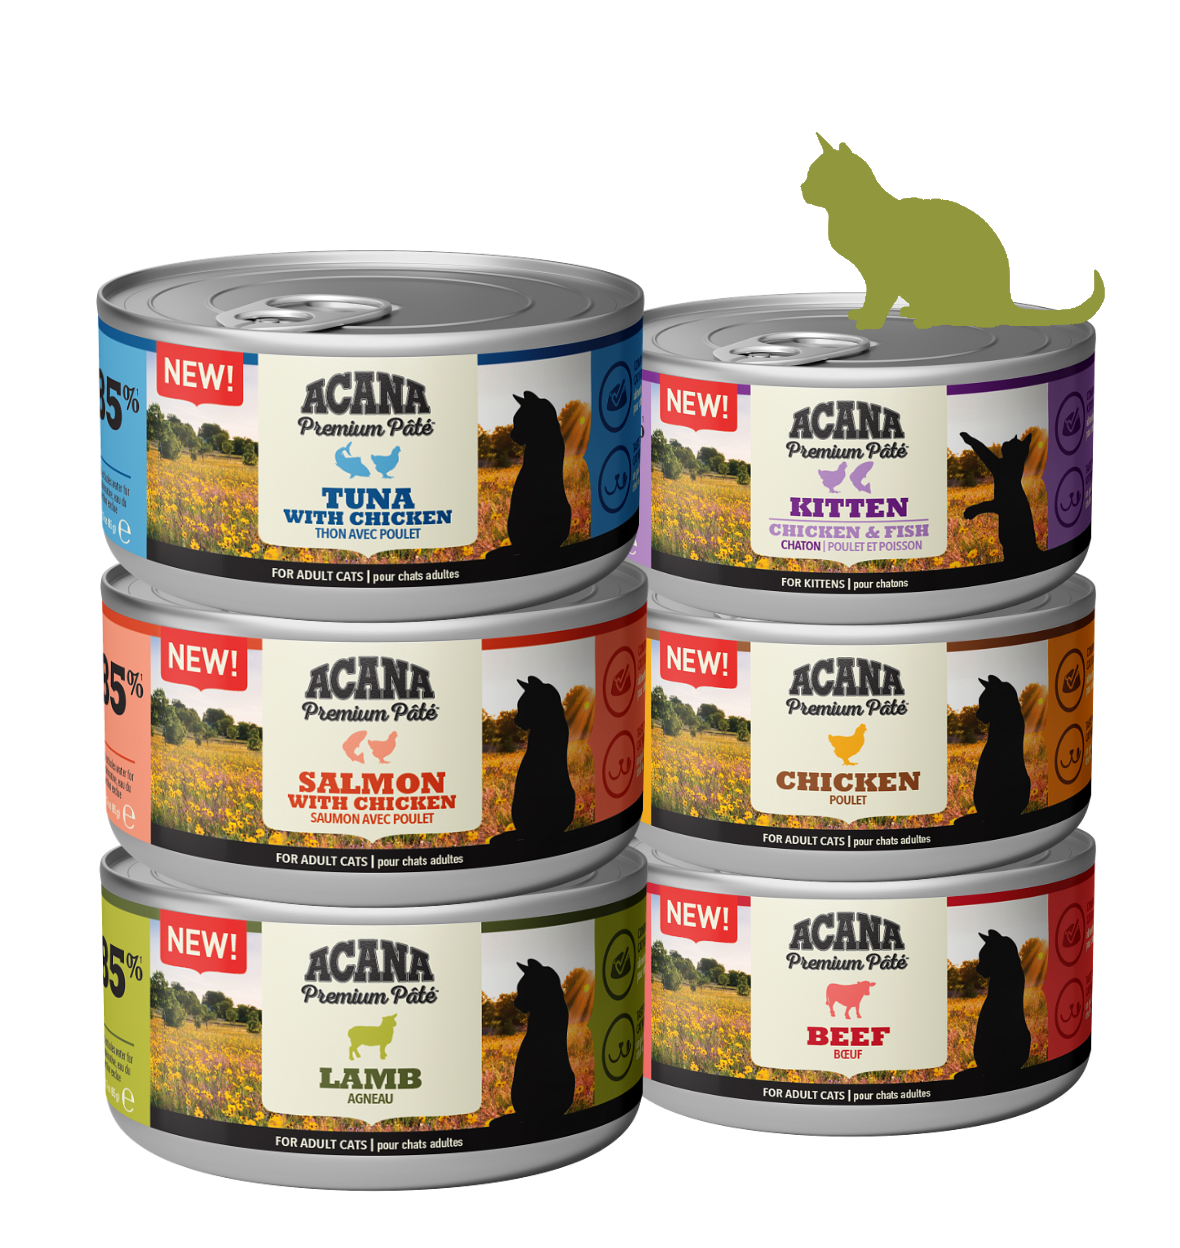 Nuevo Acana Premium Paté, la comida húmeda para gatos de Acana